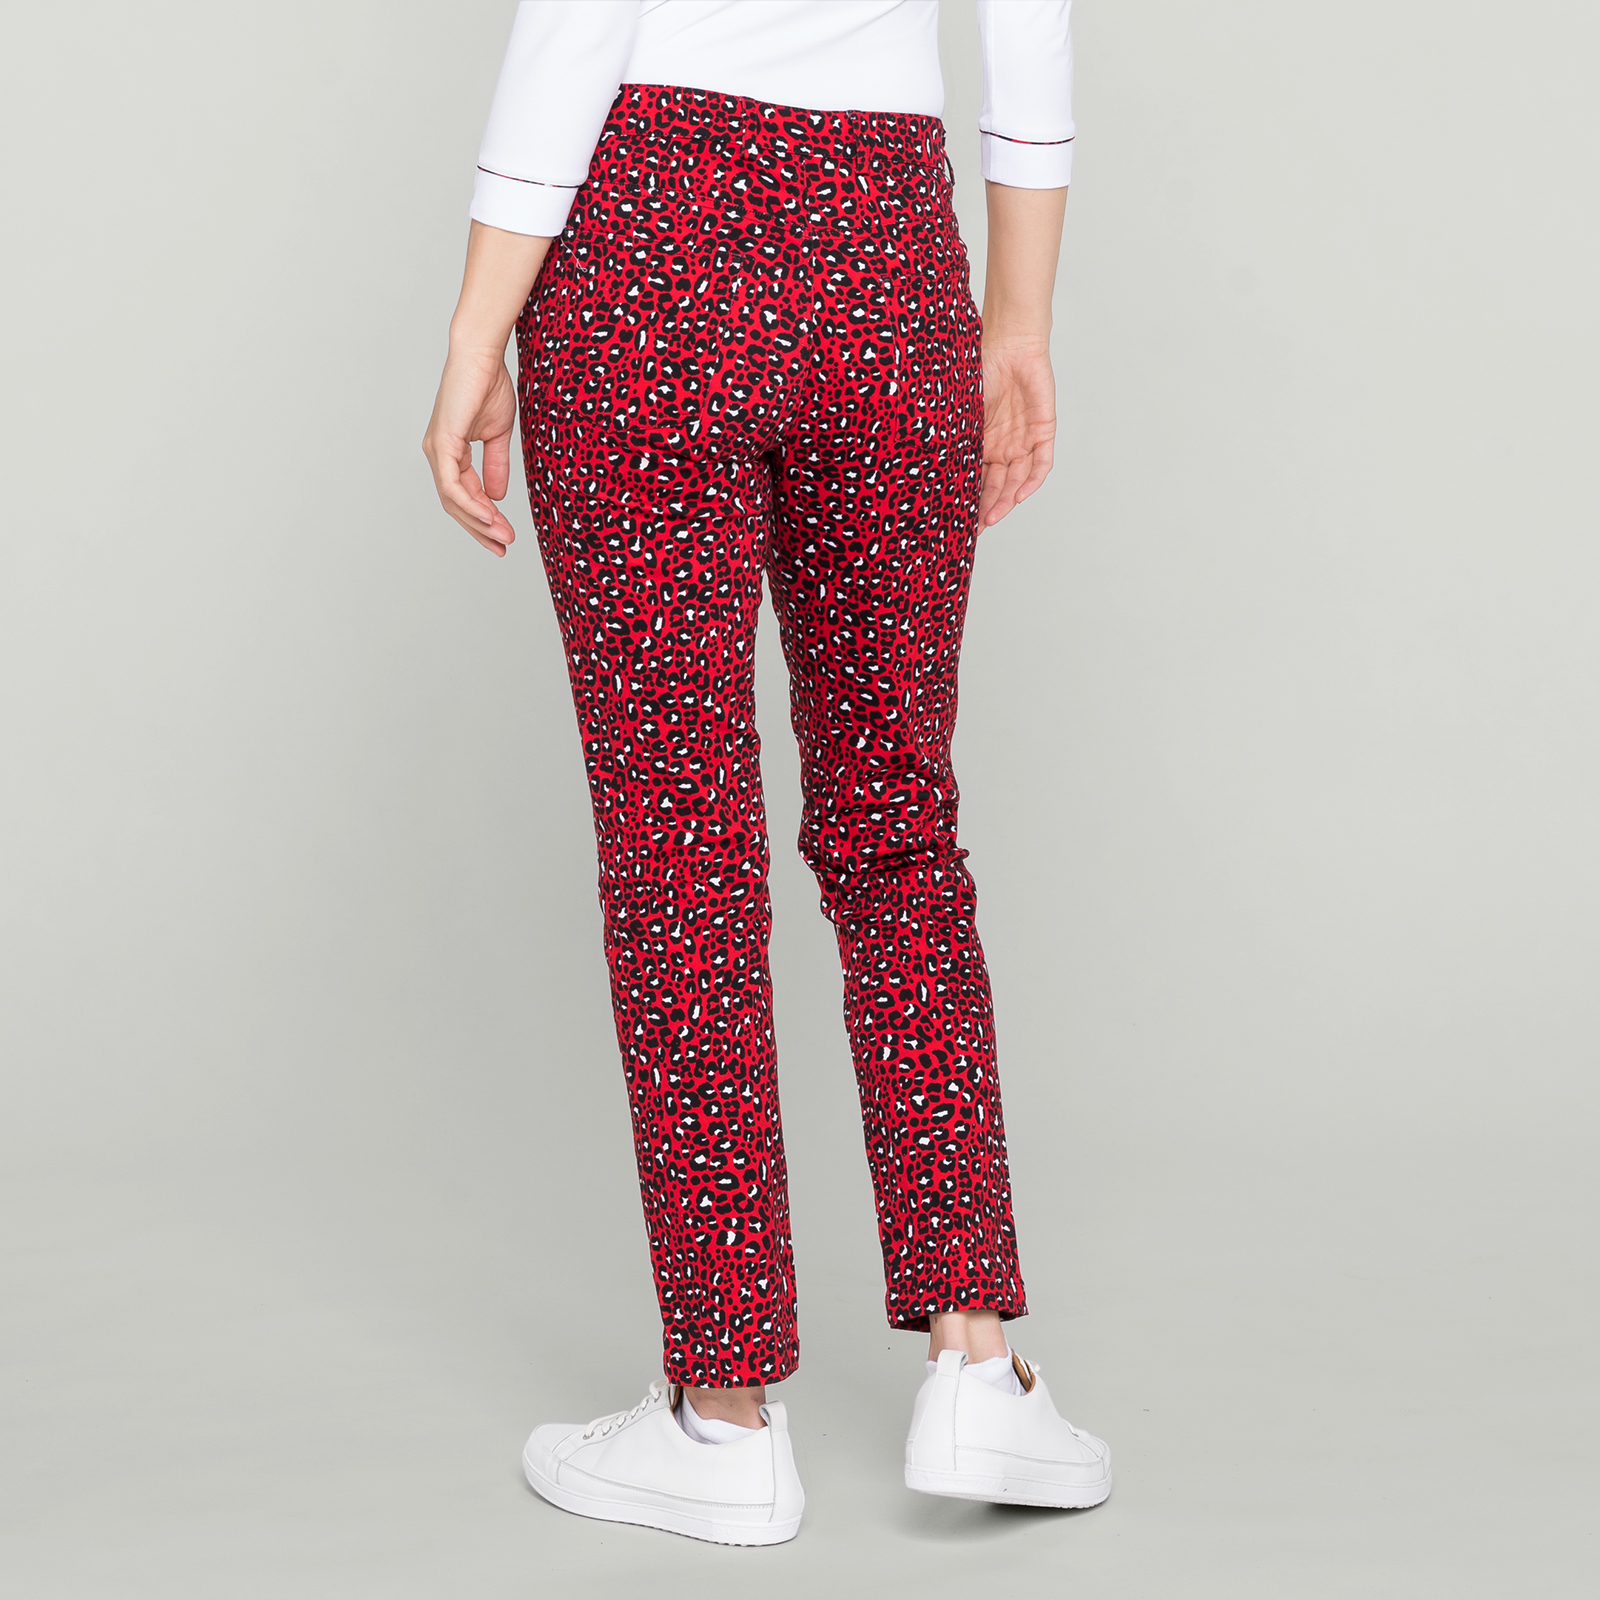 Pantalon de golf 7/8 élastique avec fibres Stretch de style léopard